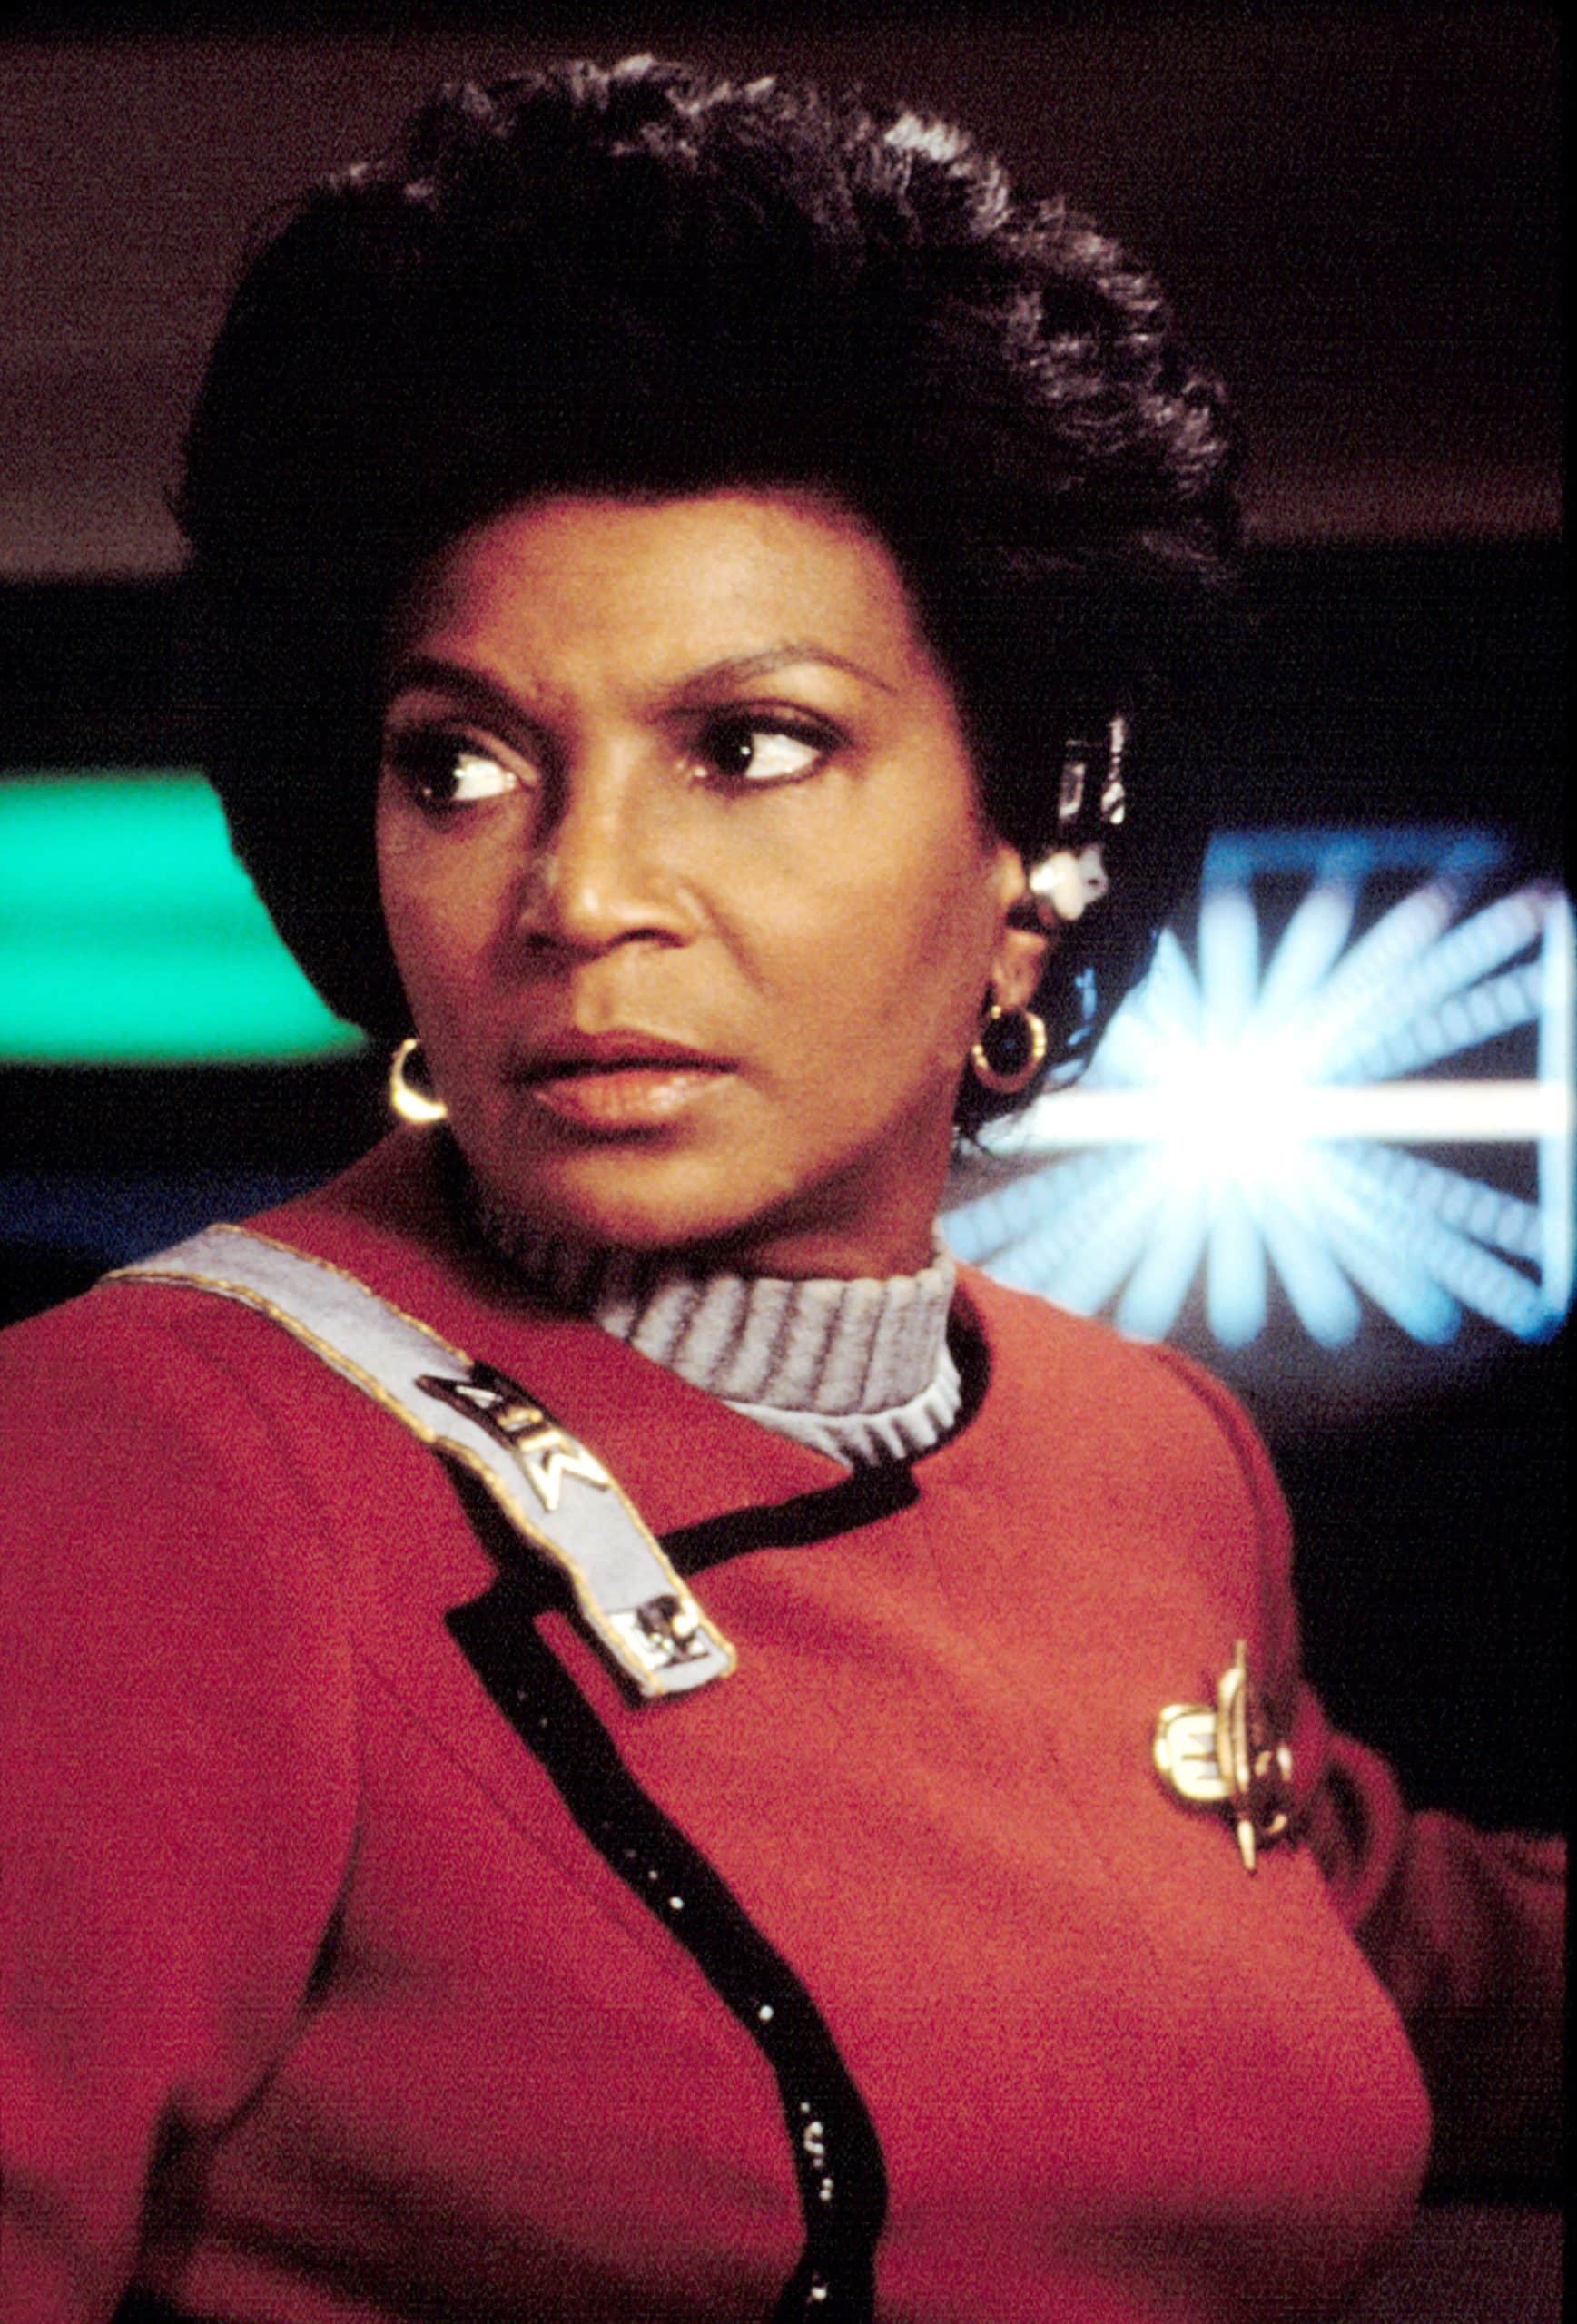 STAR TREK II: THE WRATH OF KHAN, Nichelle Nichols, wearing her communications ear piece, 1982